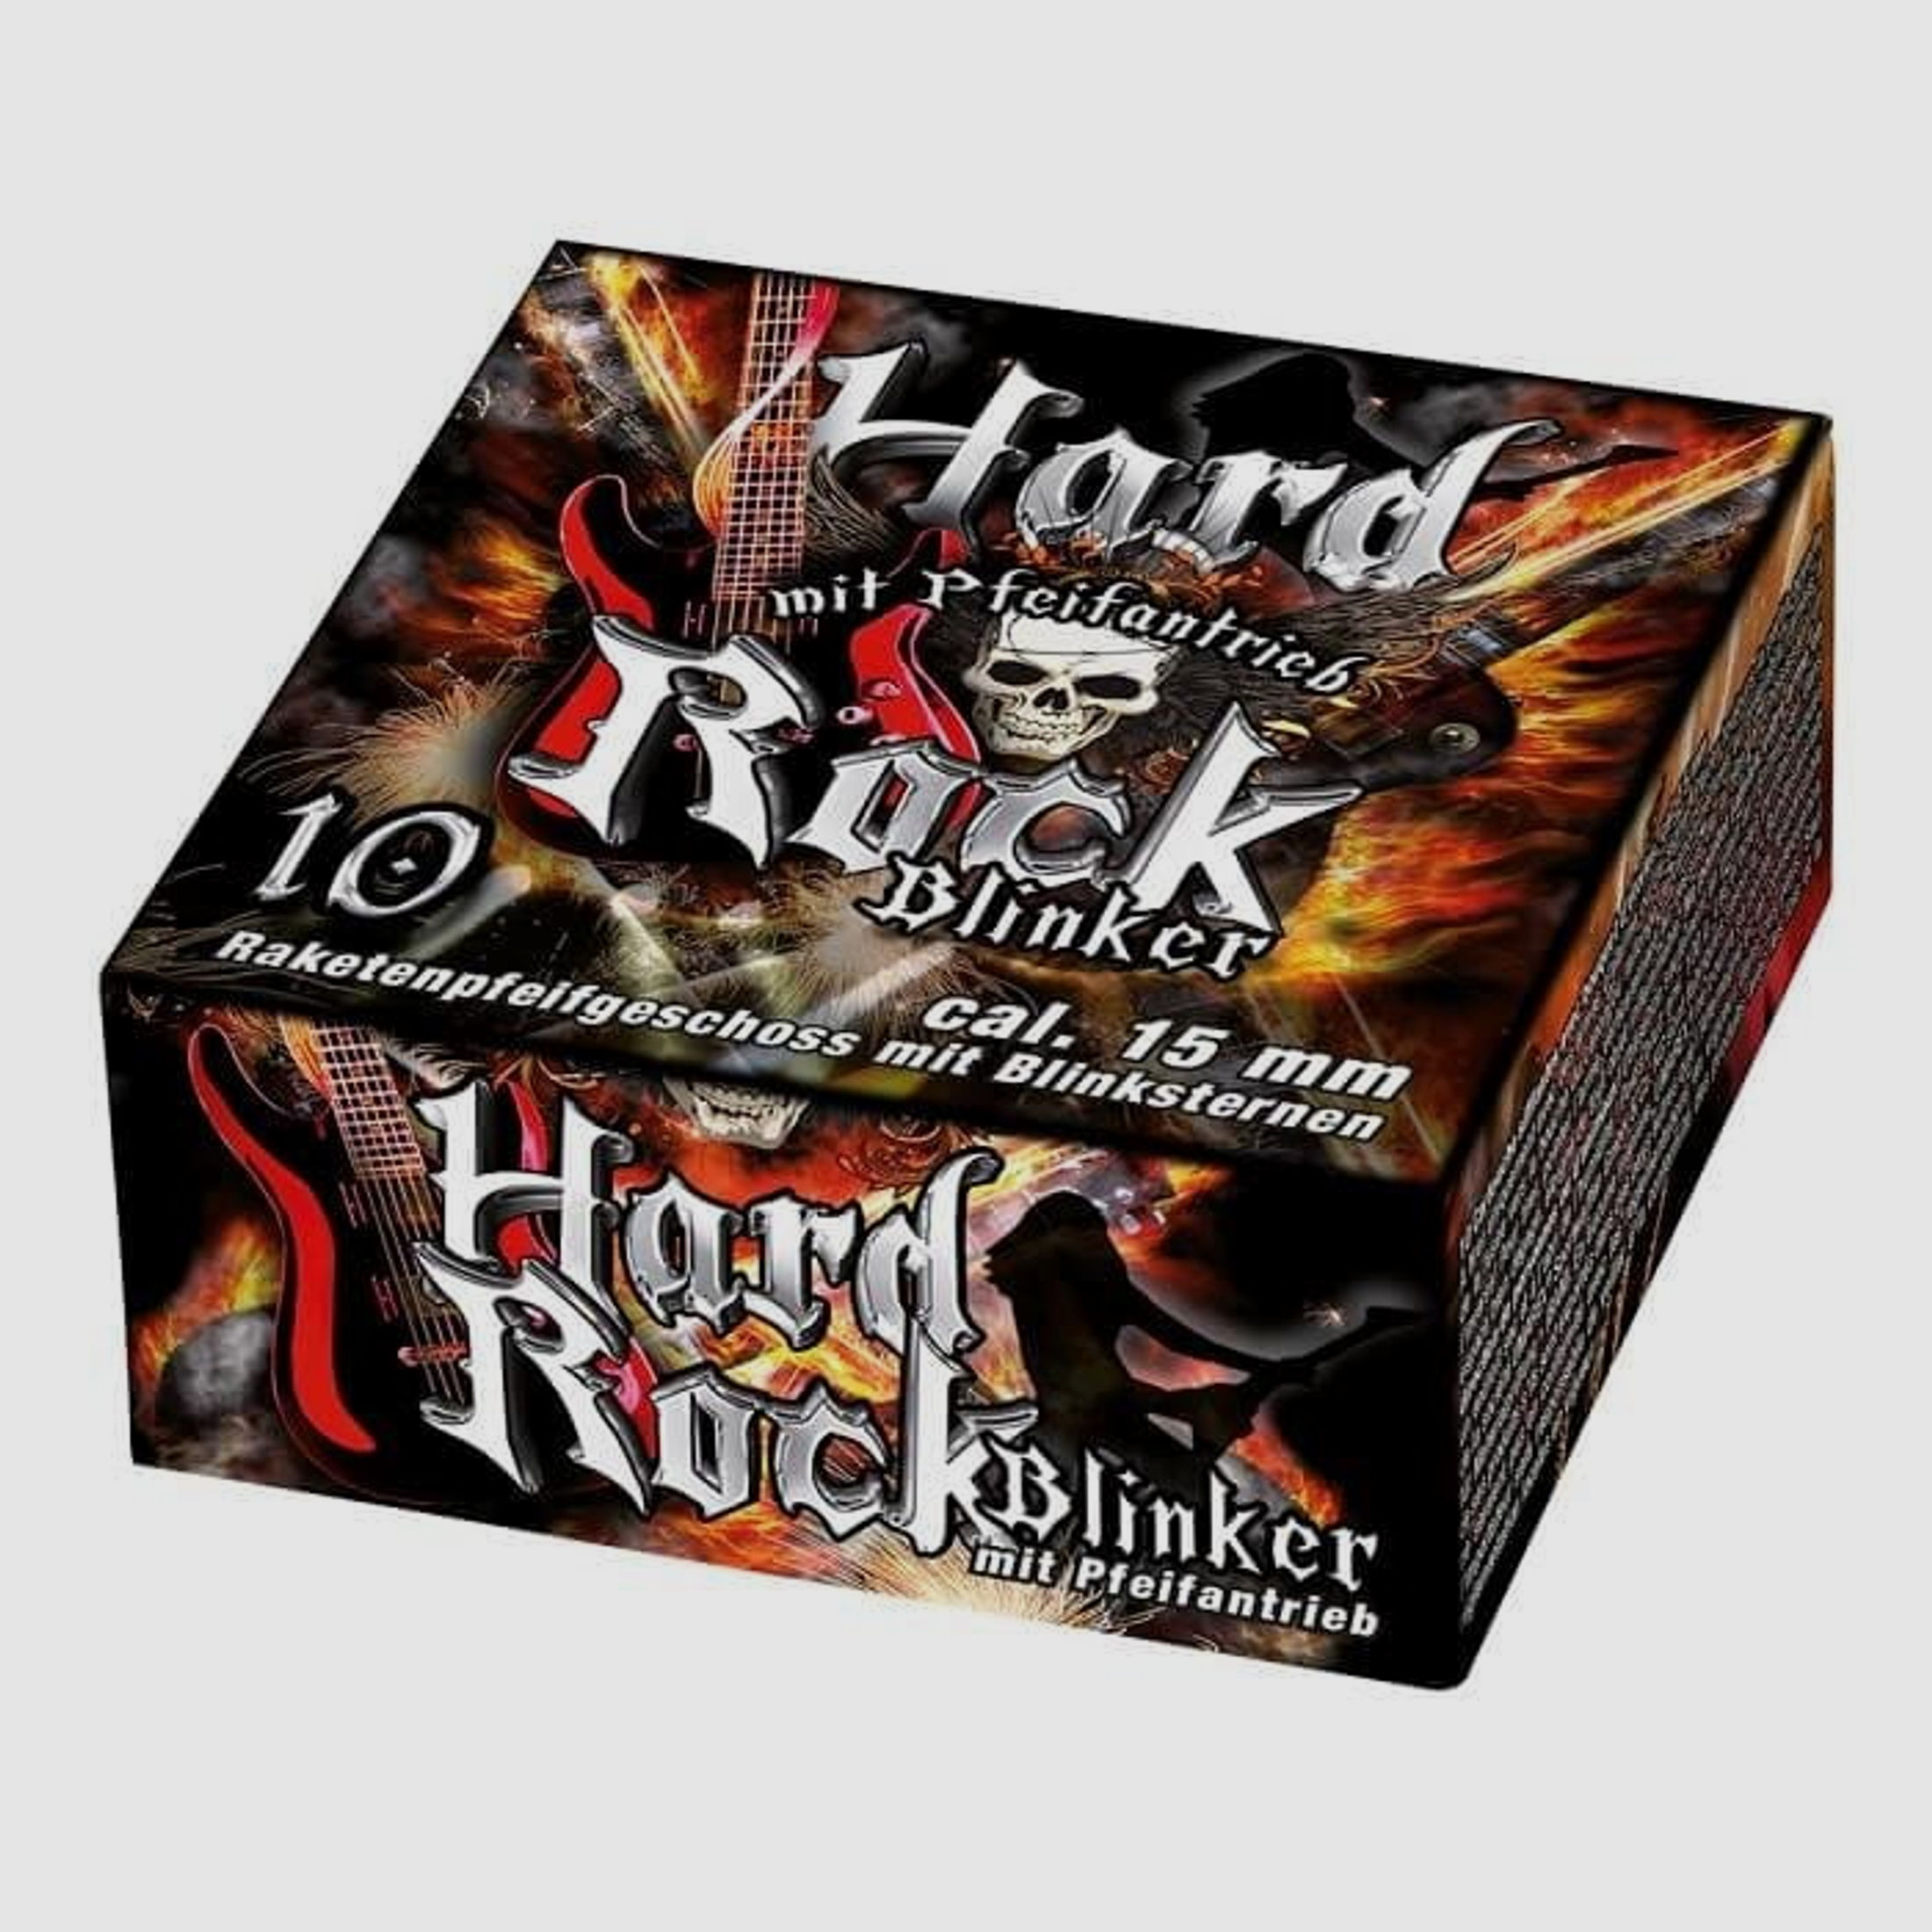 Umarex Hard Rock Blinker Signaleffekt - 10 Stk.